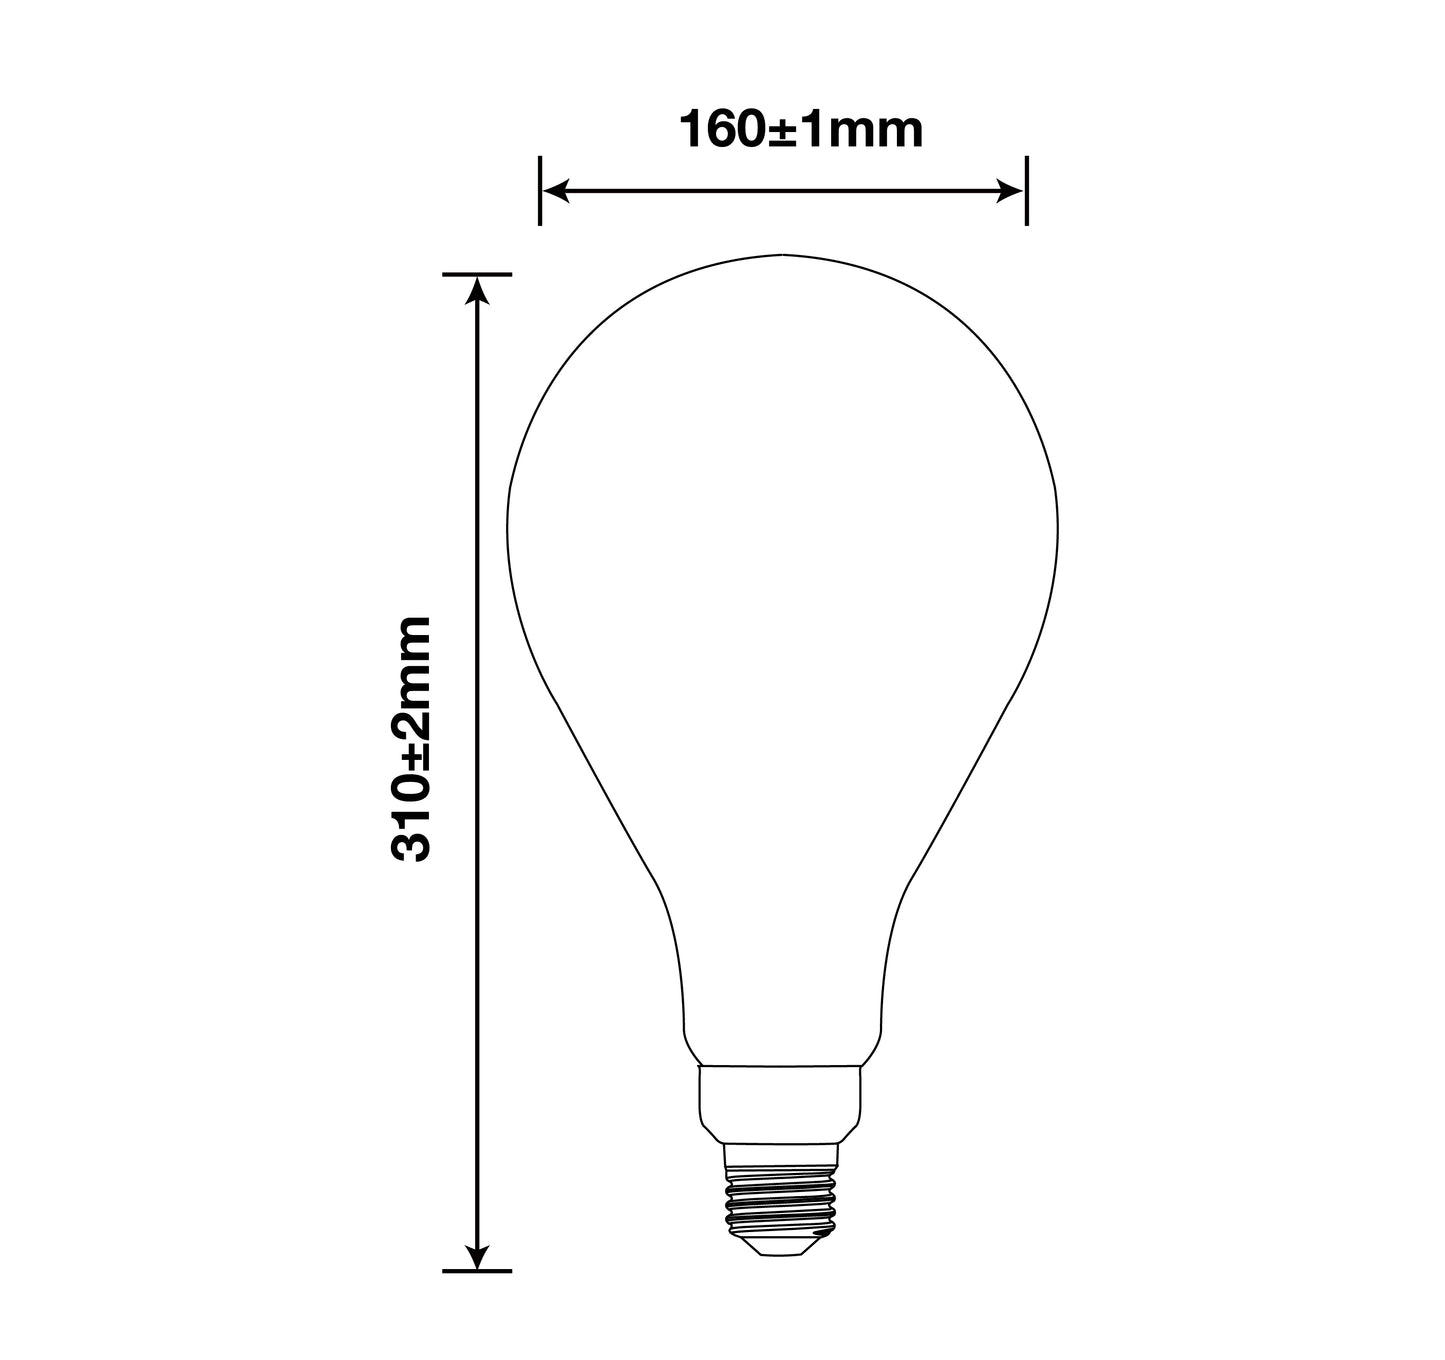 Amber PS52 Edison Oversized Light Bulb, 1 Bulb